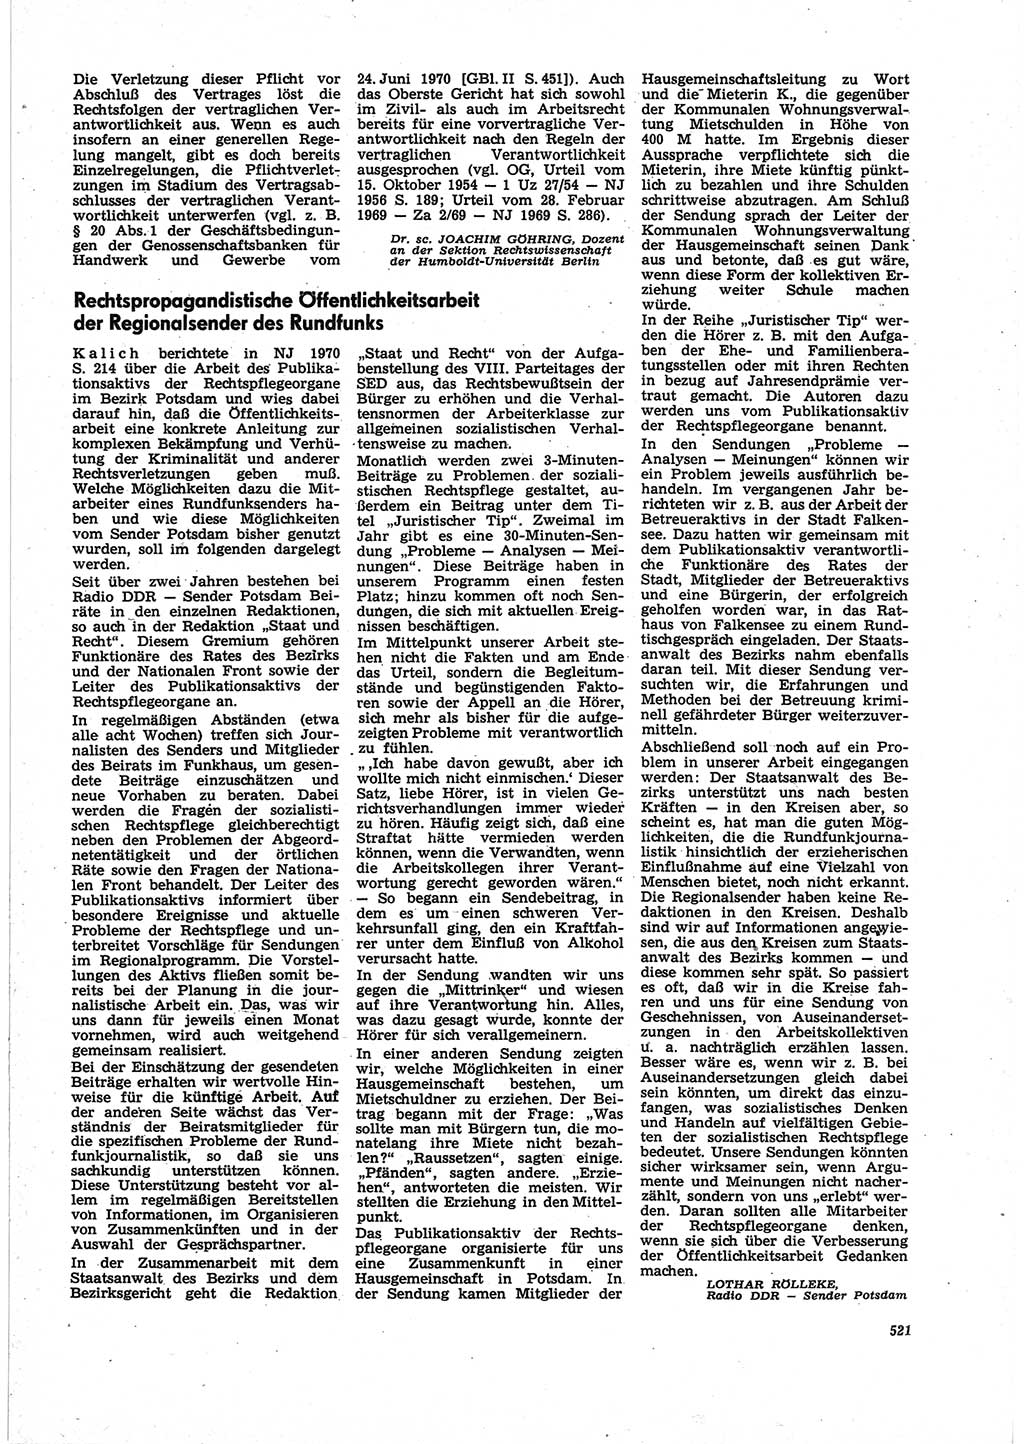 Neue Justiz (NJ), Zeitschrift für Recht und Rechtswissenschaft [Deutsche Demokratische Republik (DDR)], 25. Jahrgang 1971, Seite 521 (NJ DDR 1971, S. 521)